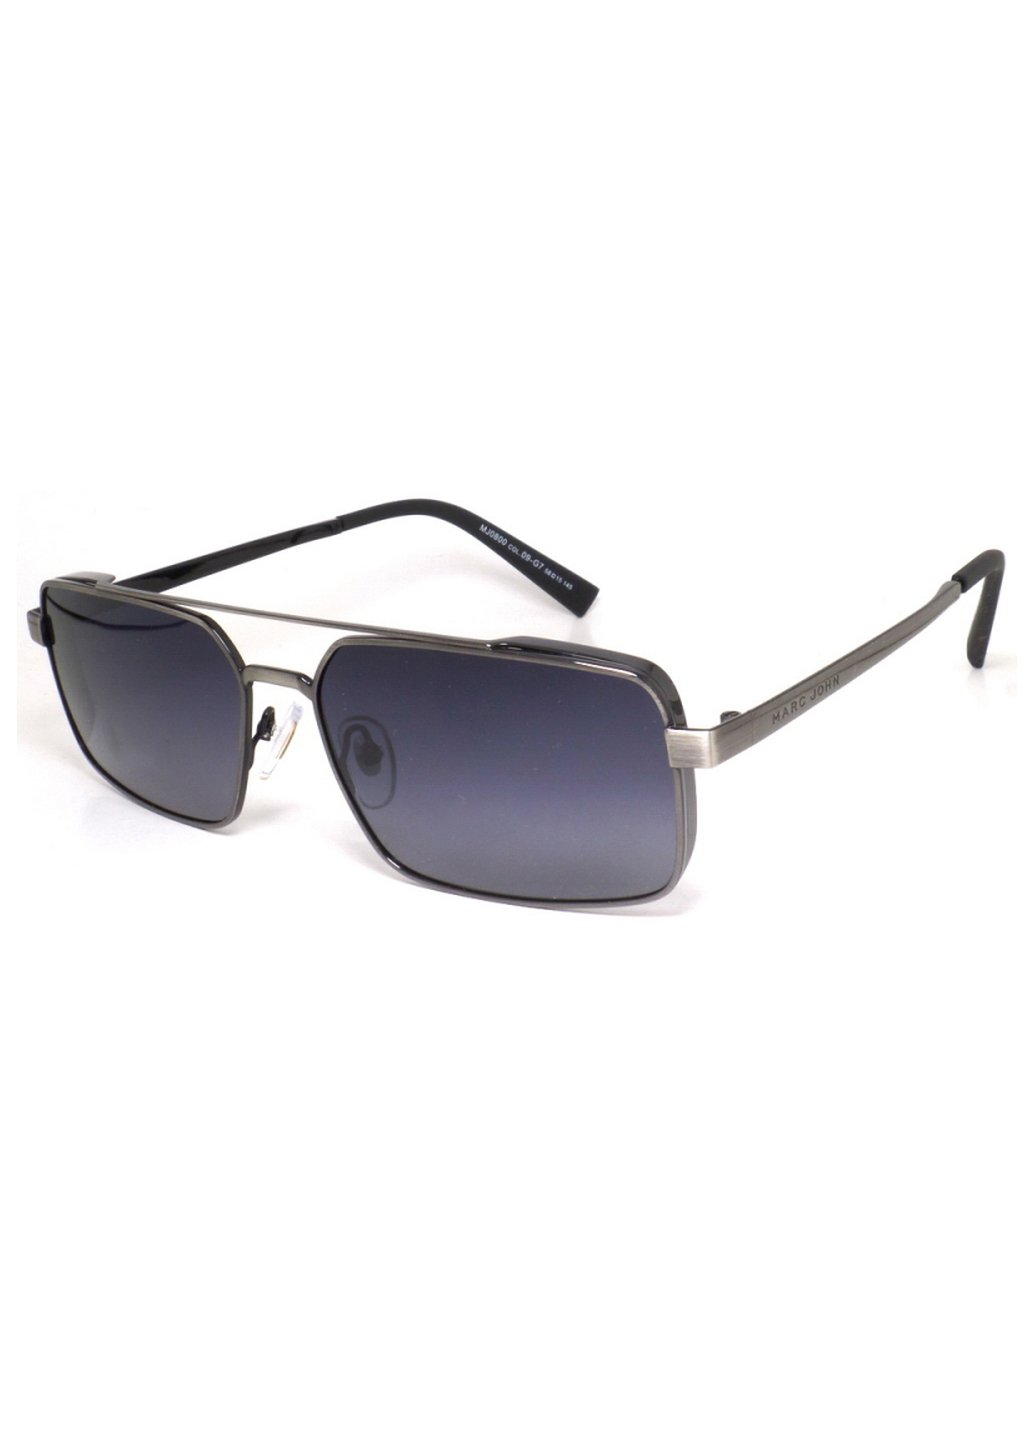 Купить Мужские солнцезащитные очки Marc John с поляризацией MJ0800 190009 - Синий в интернет-магазине